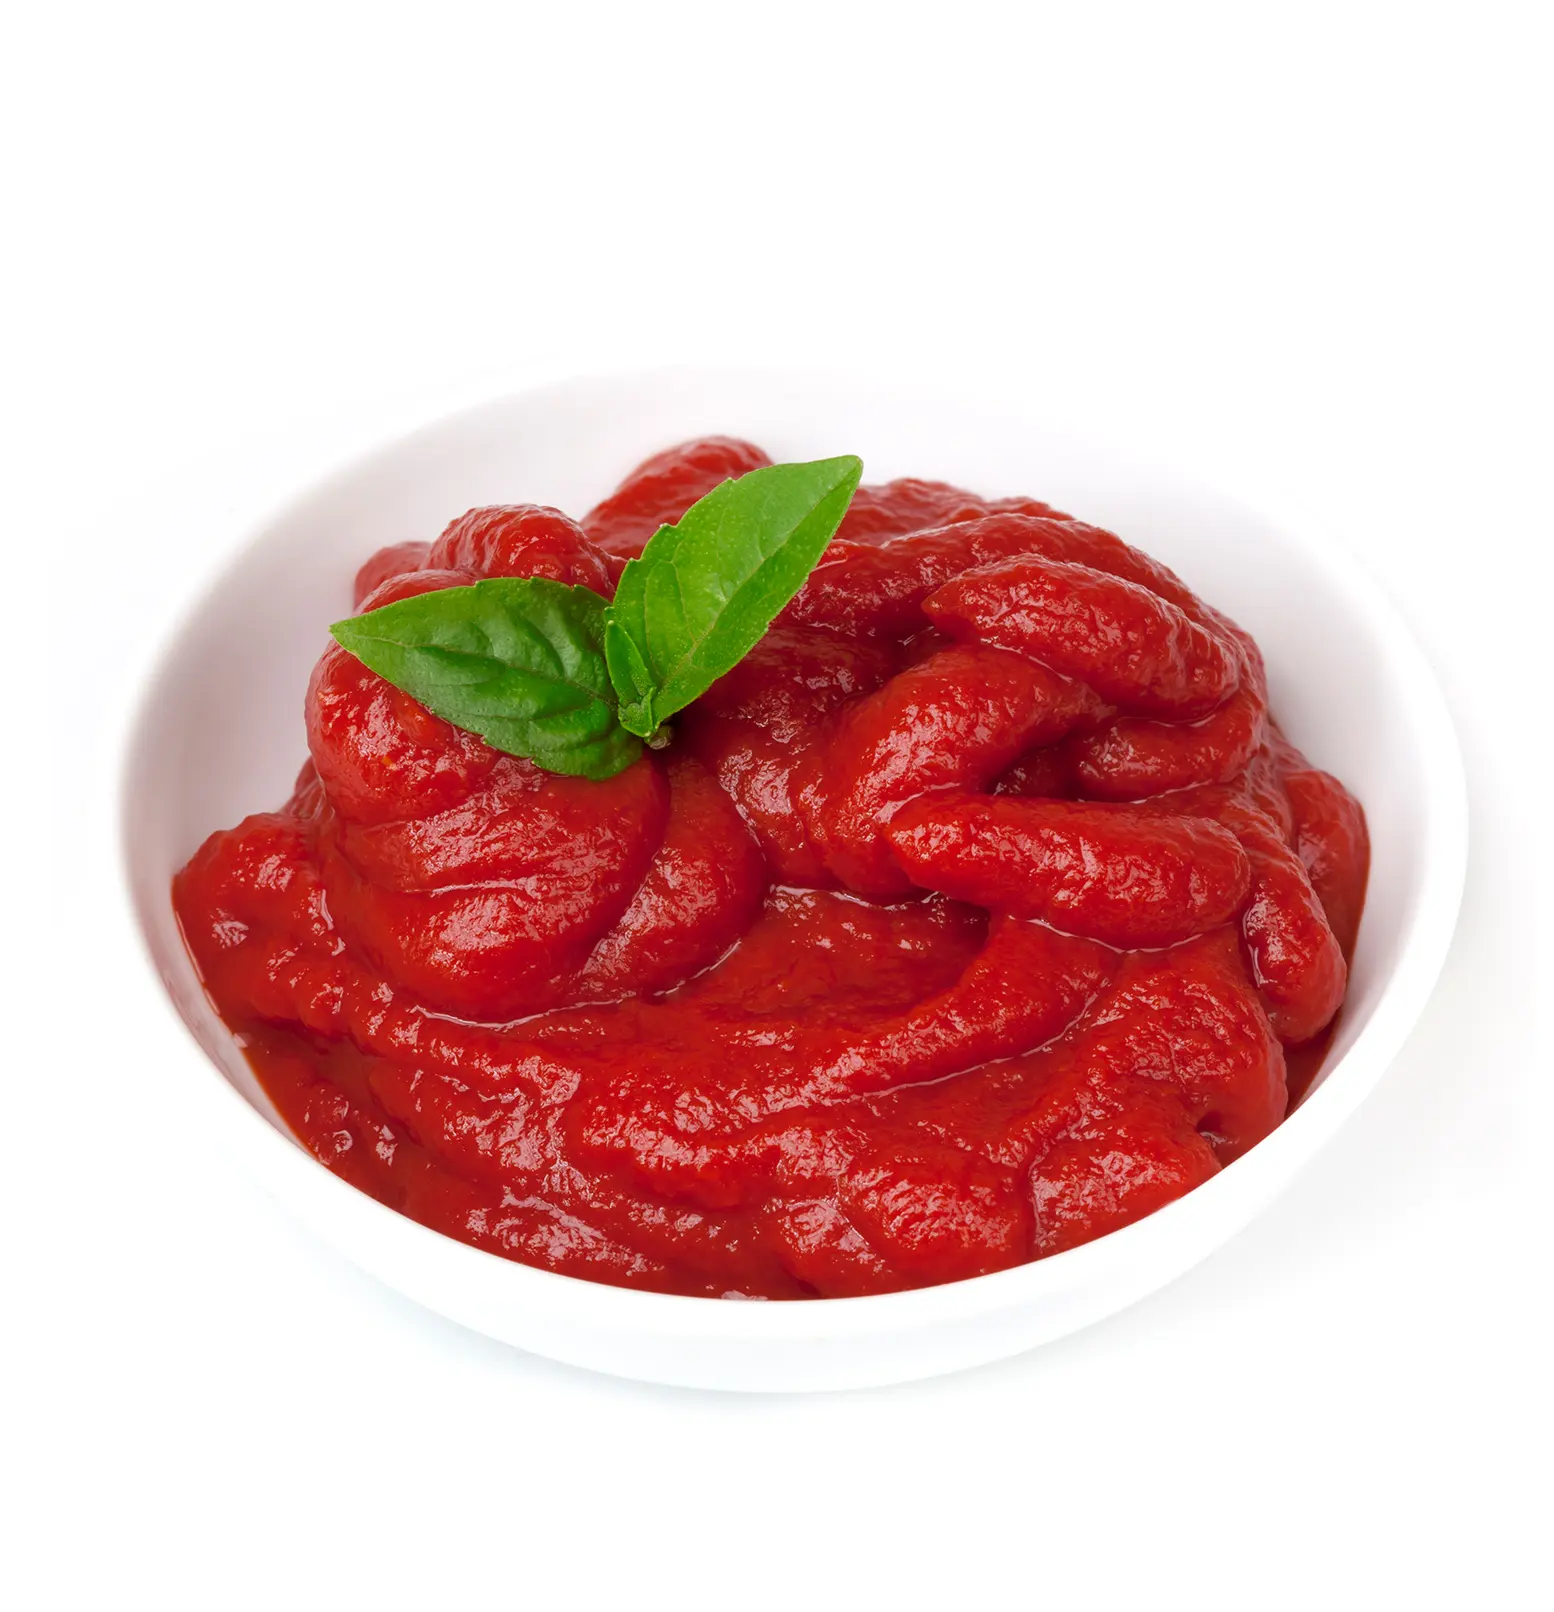 Deliciosa pasta de tomate lata de pasta de tomate enlatada a granel 100% tomates salados naturales al por mayor para cocinar